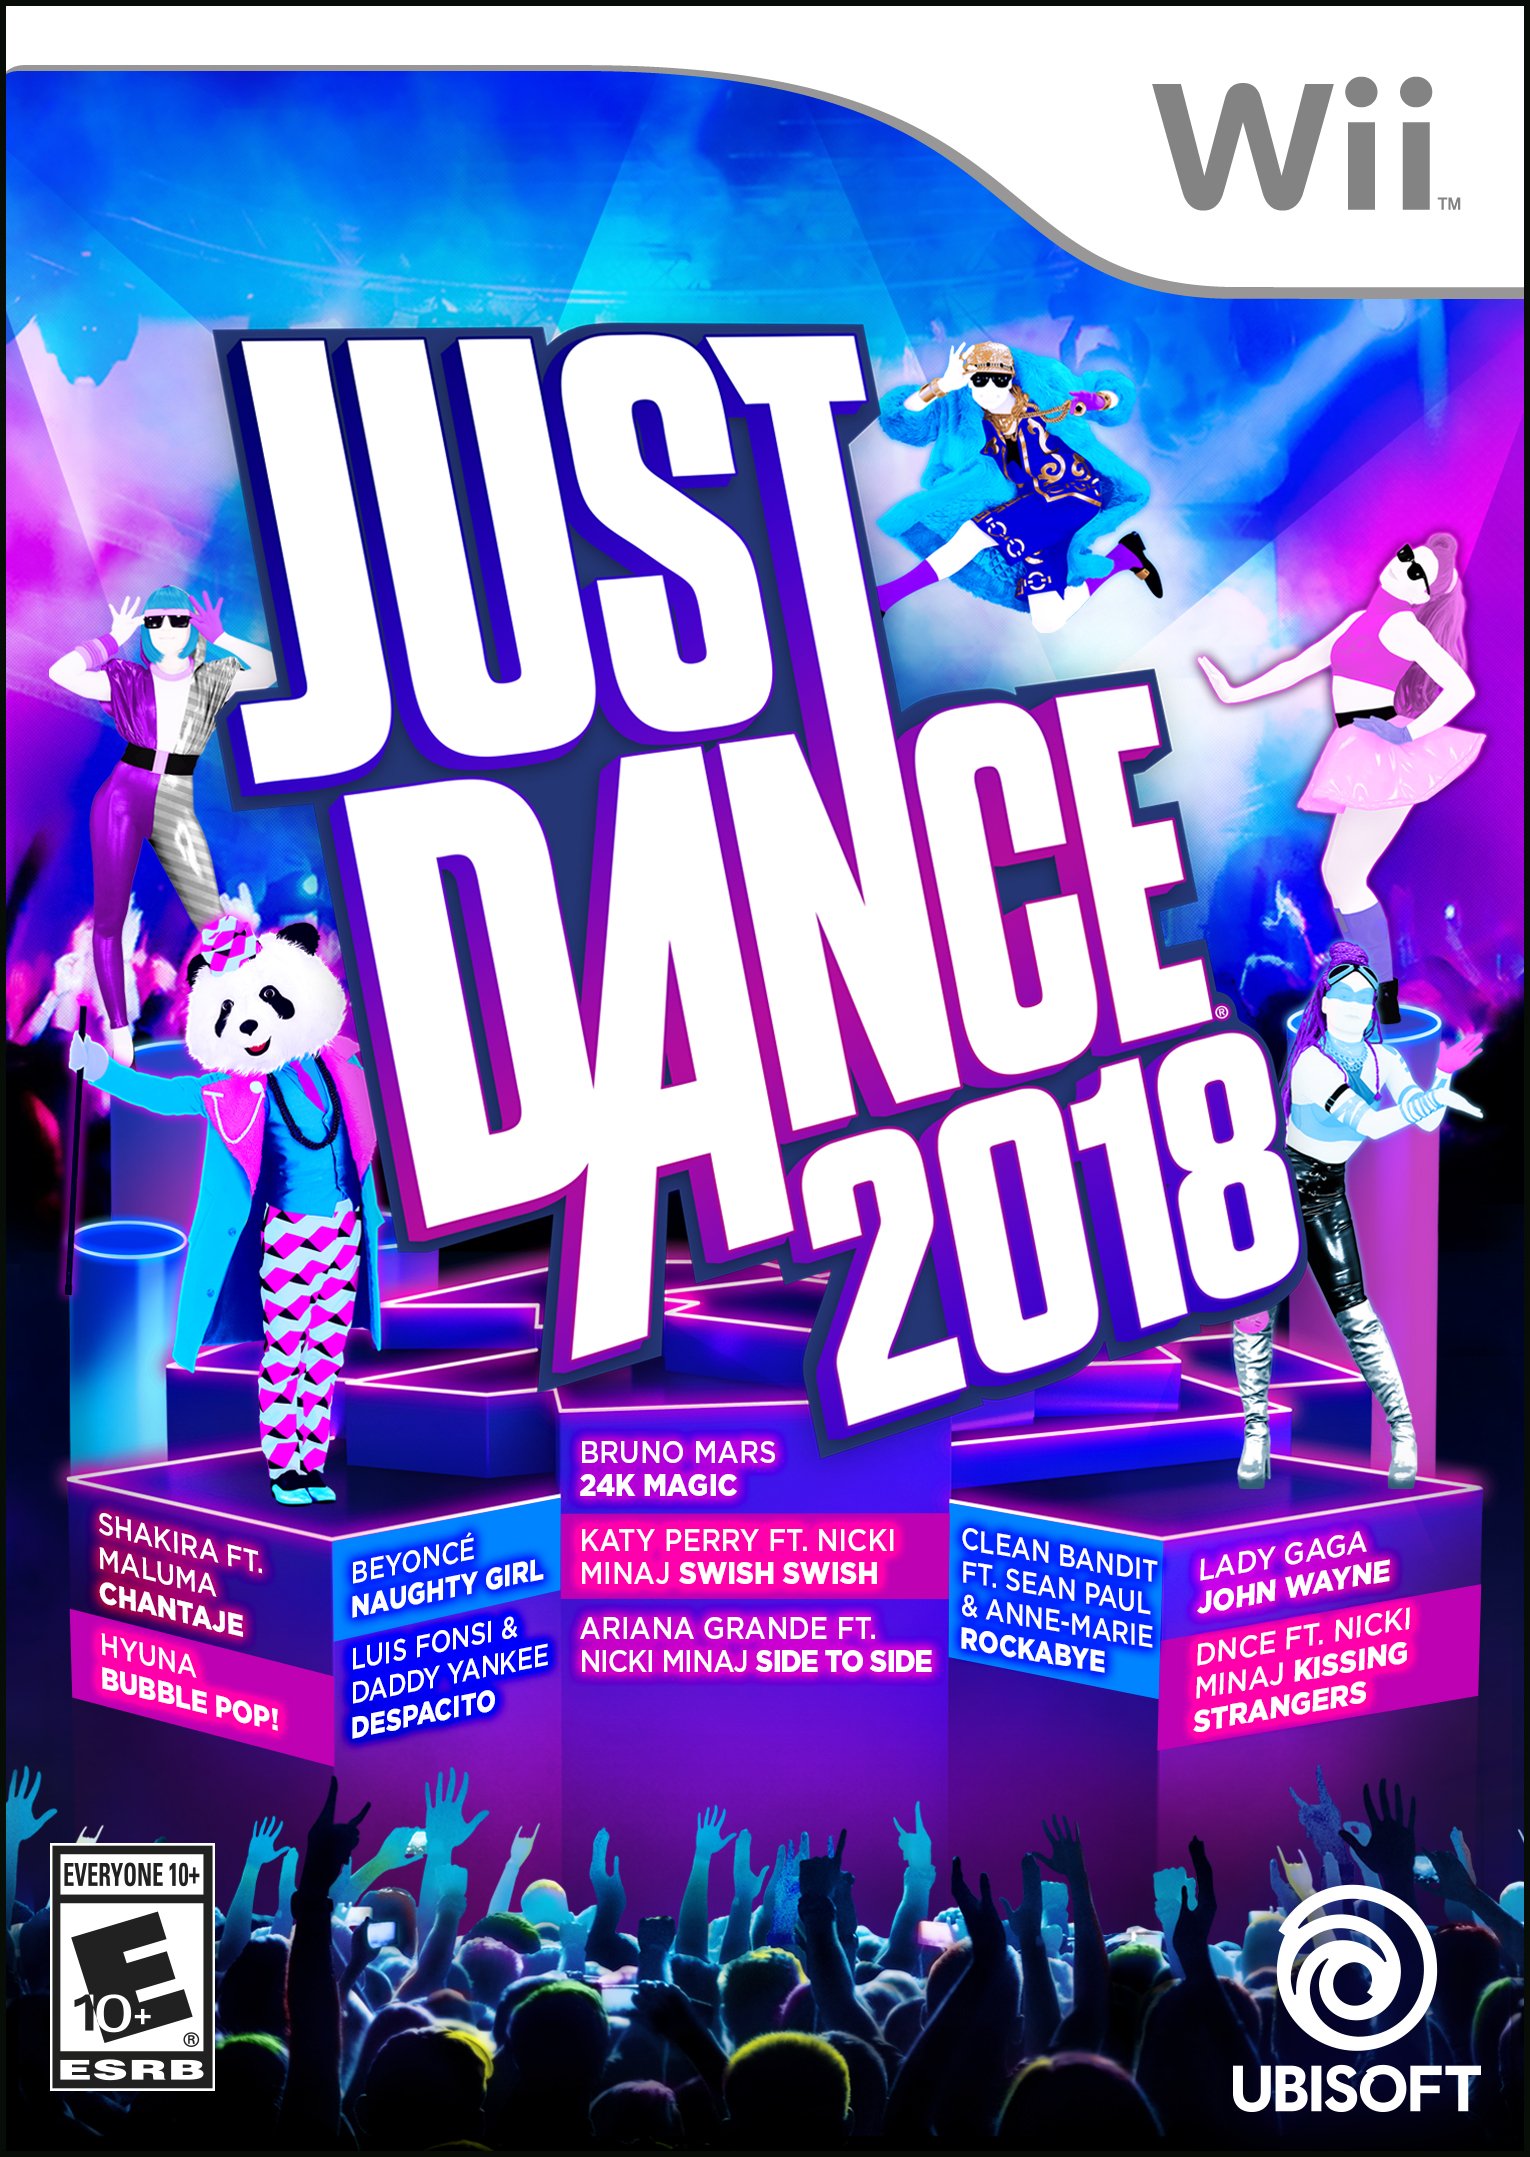 Just Dance 2018 Release Date Xbox 360 Ps3 Wii Wii U